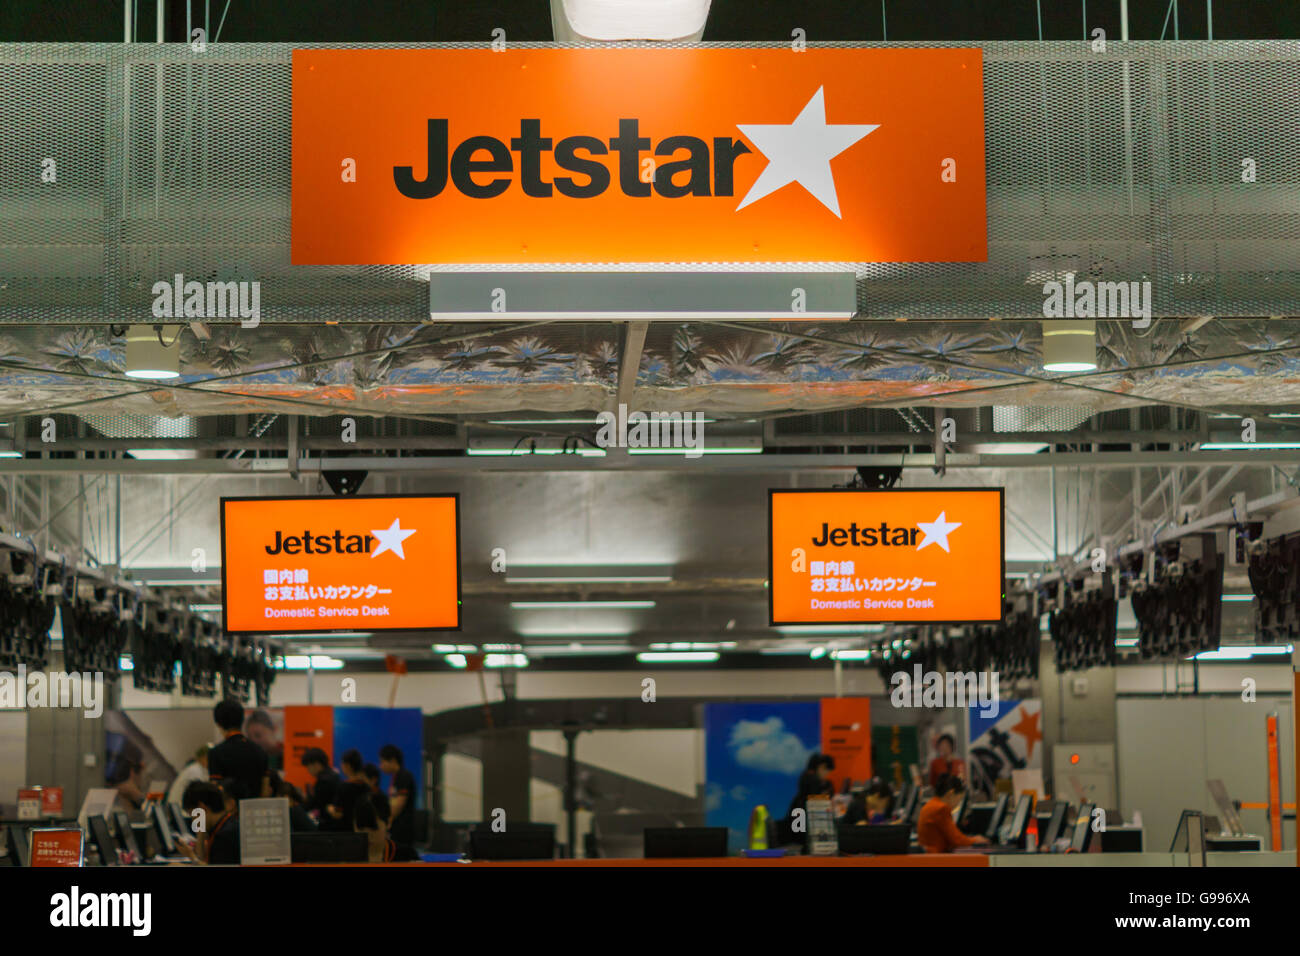 JetStar check-in counter at Narita airport, Japan Stock Photo